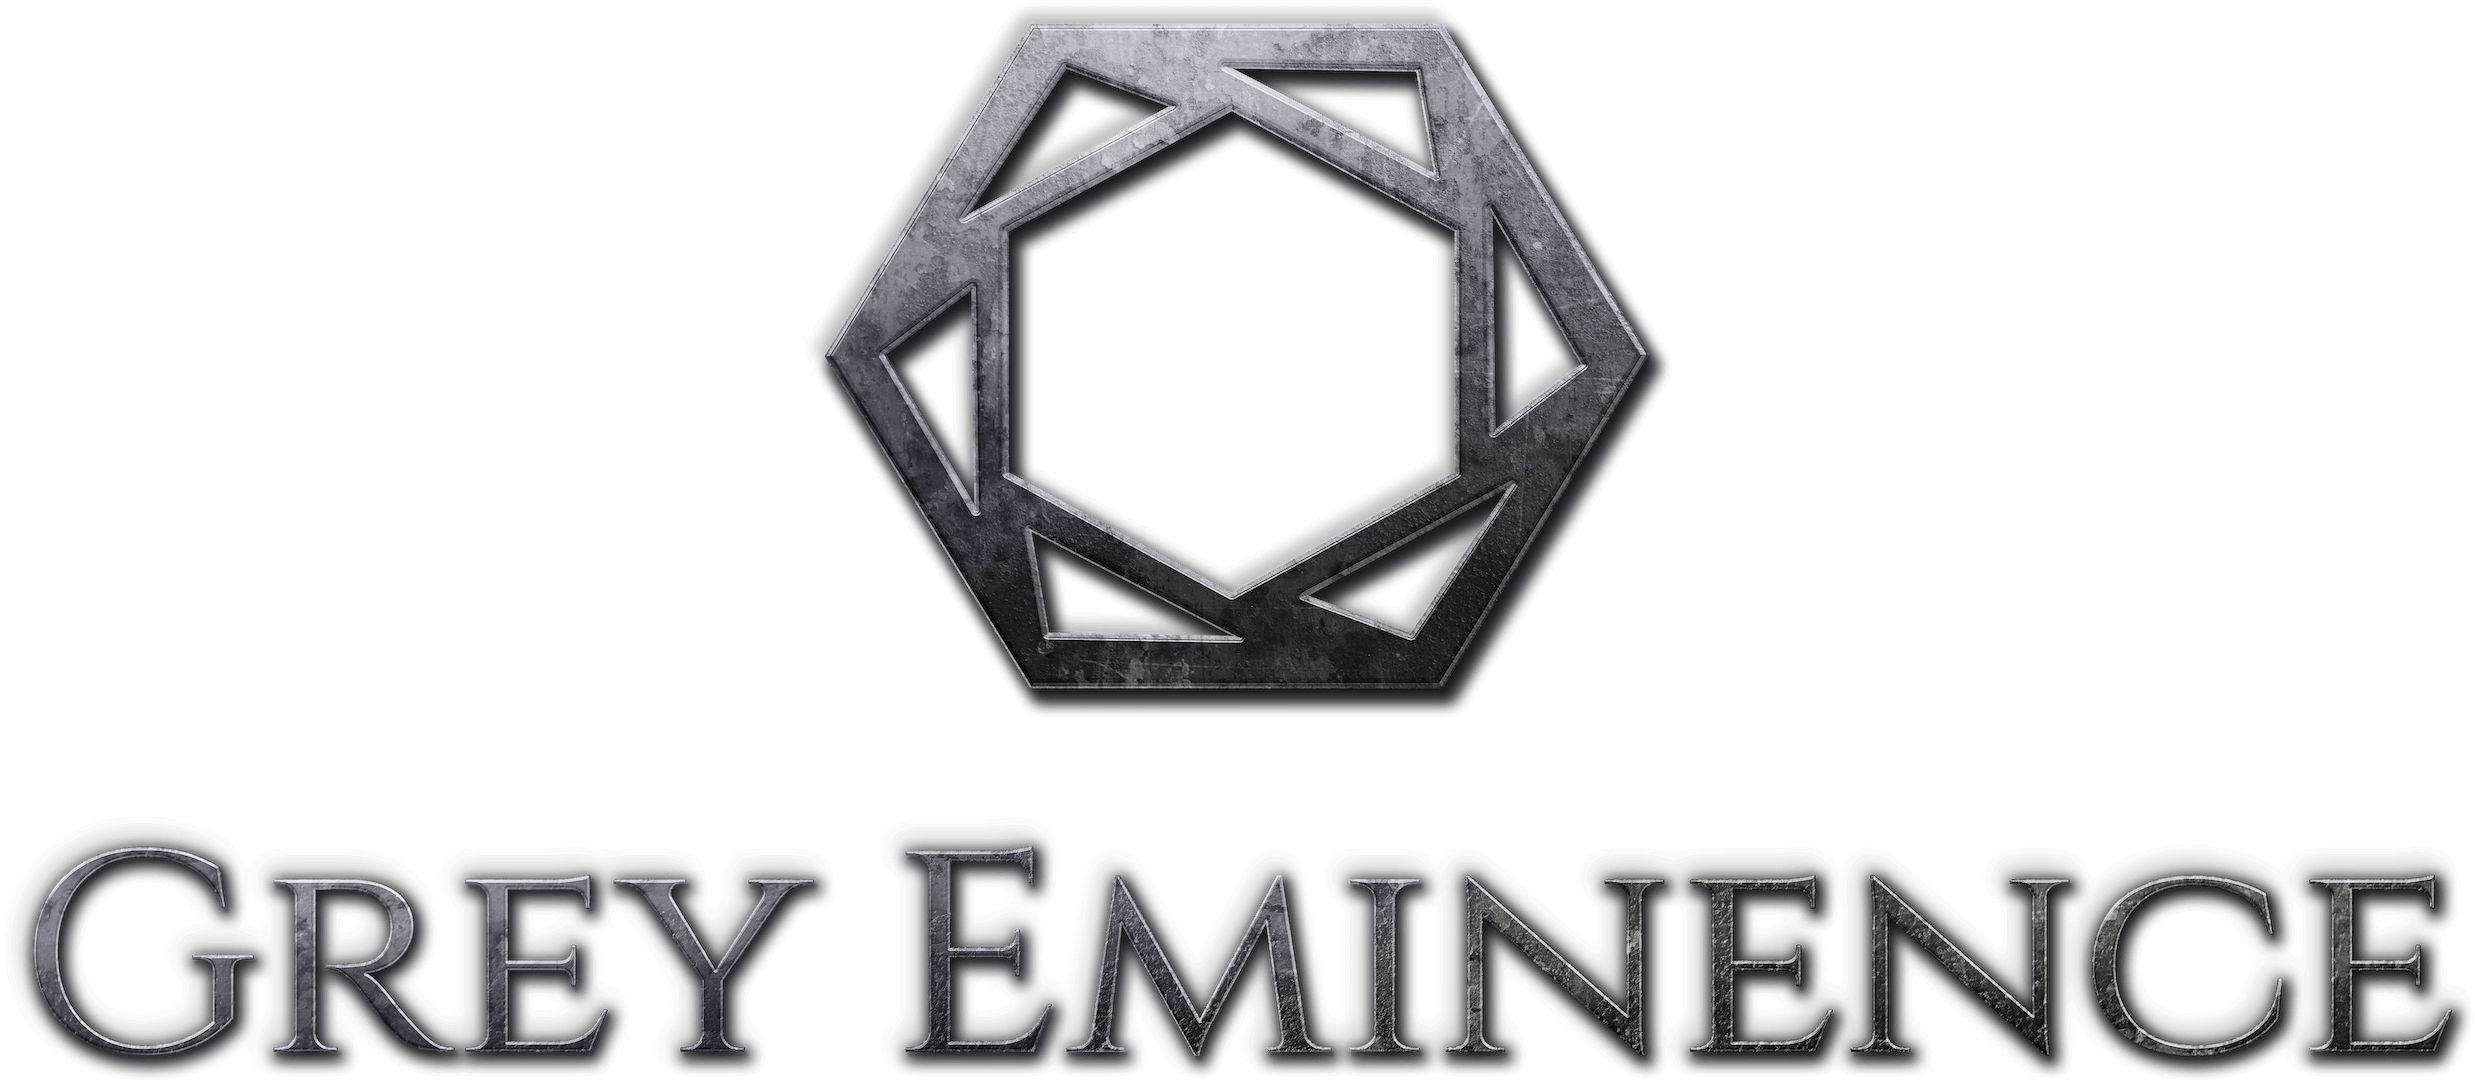 Grey Eminence logo and logotype